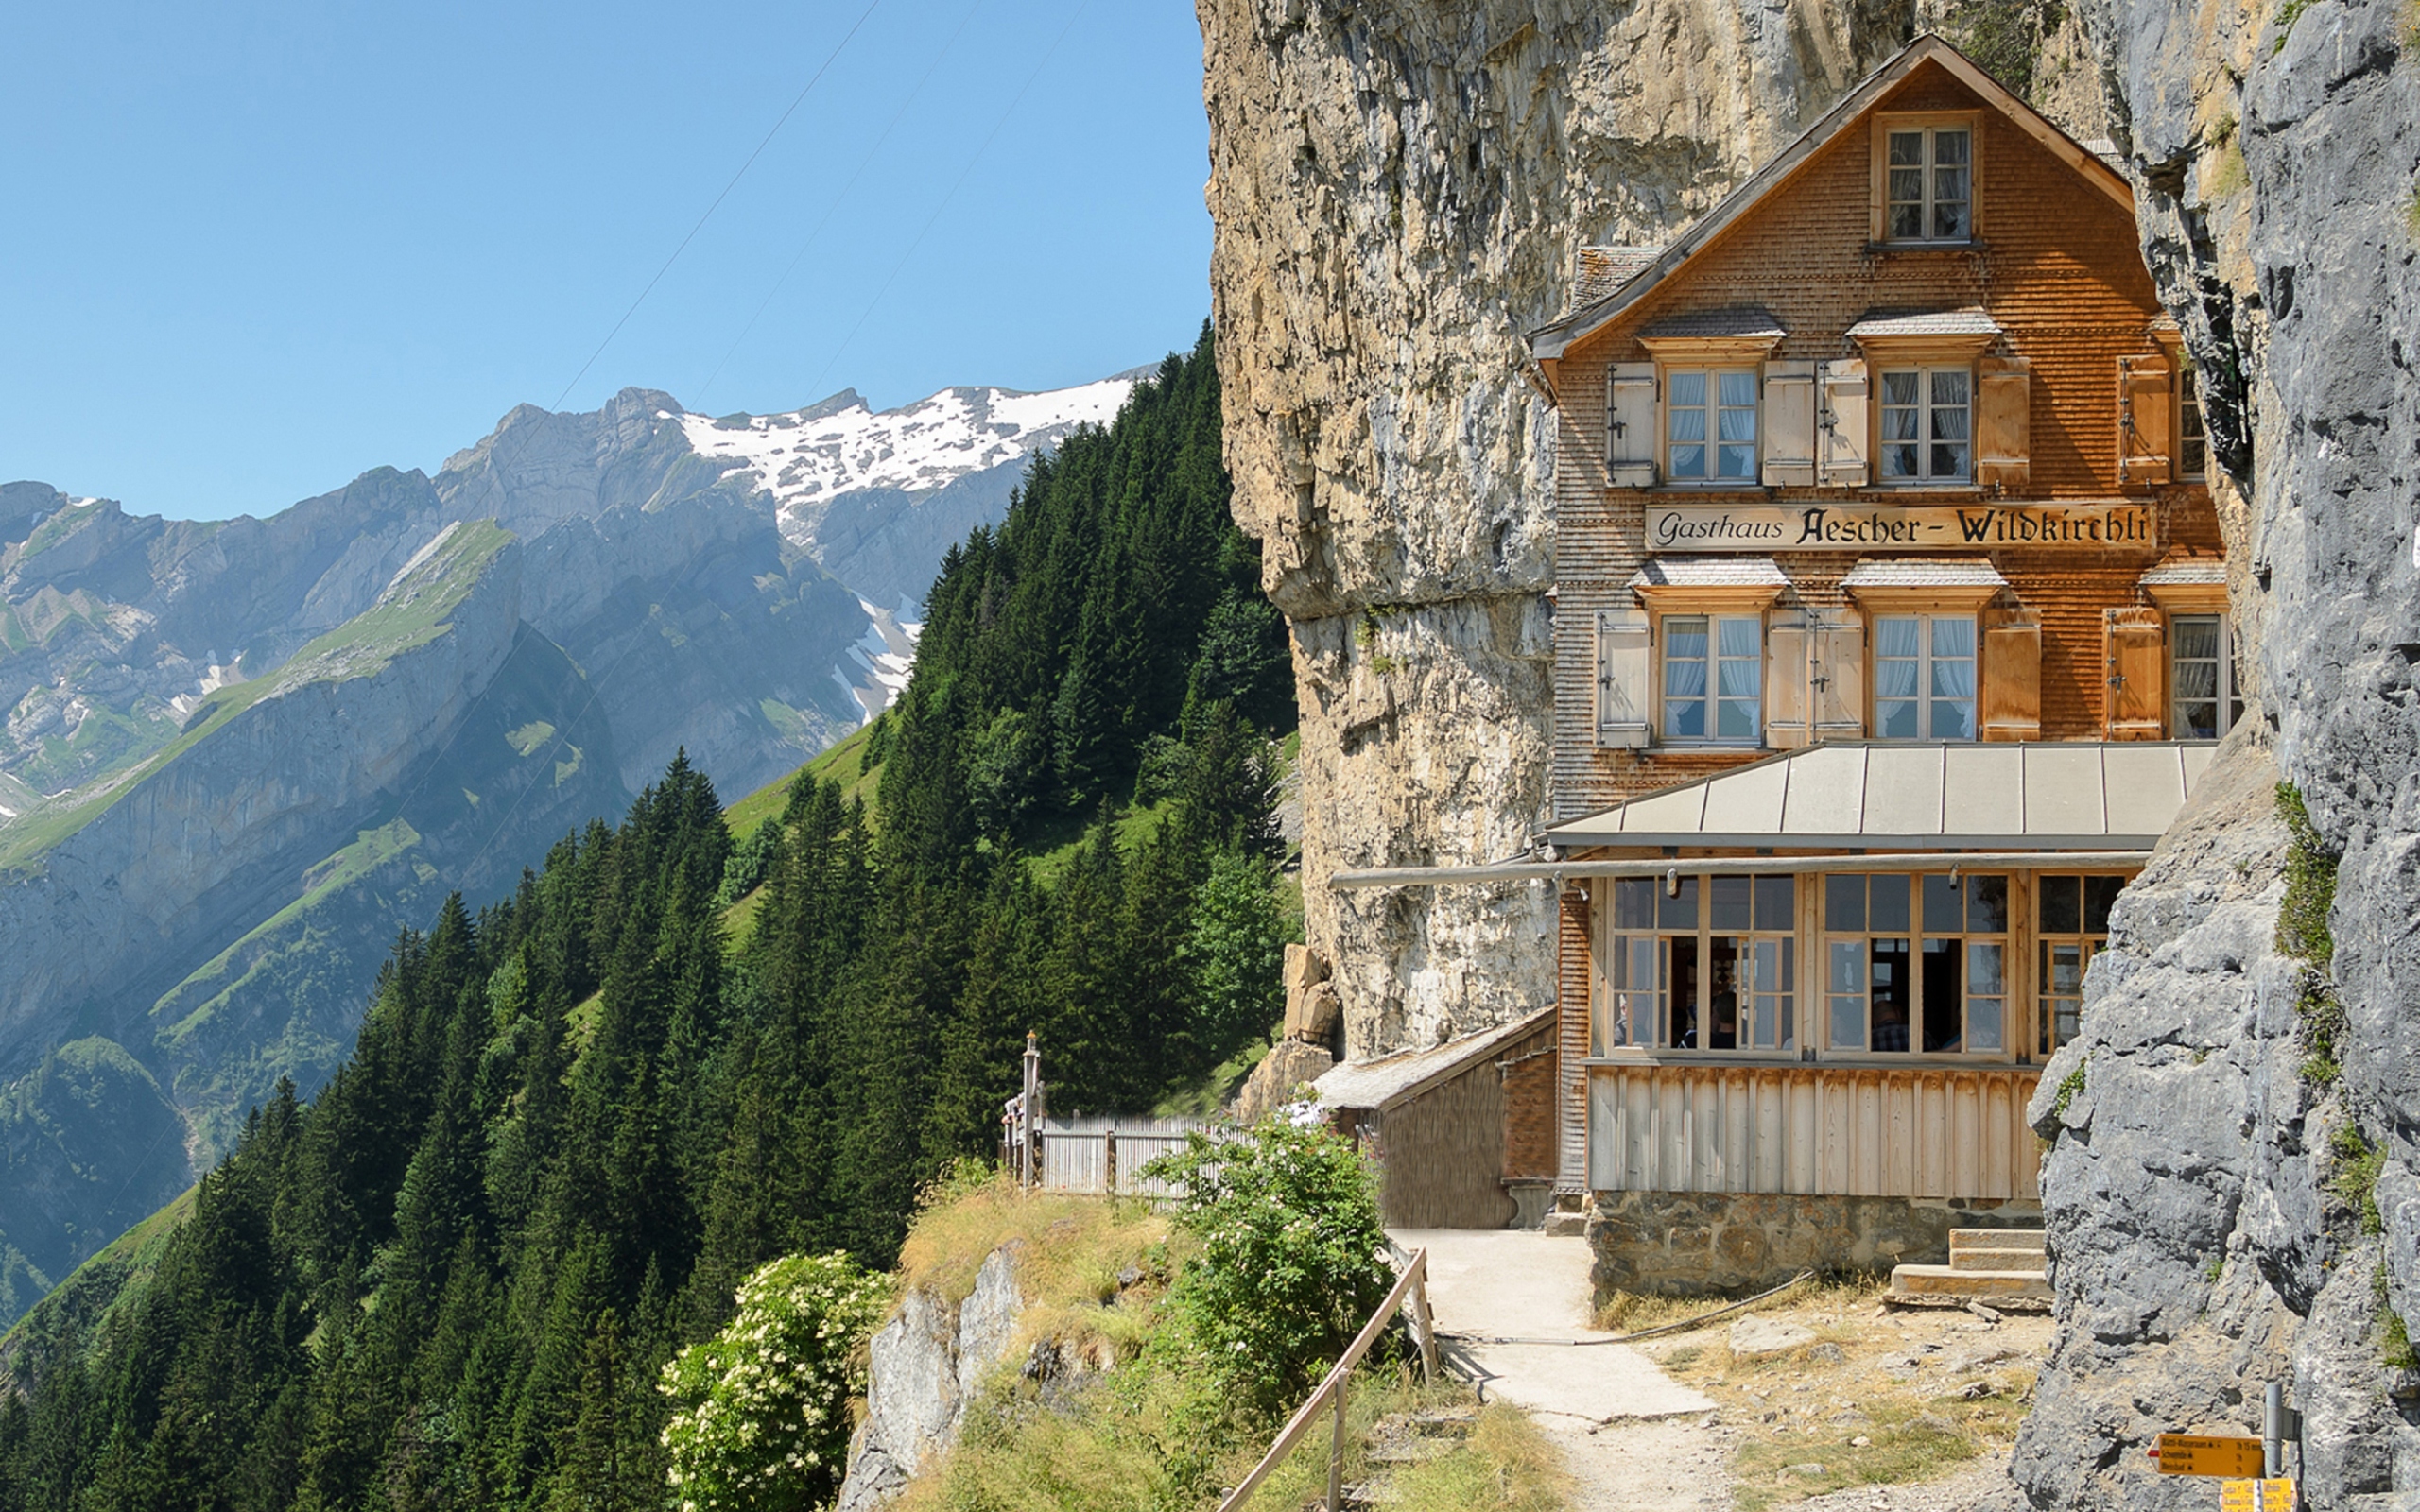 Gasthaus in Schweiz wallpaper 2560x1600